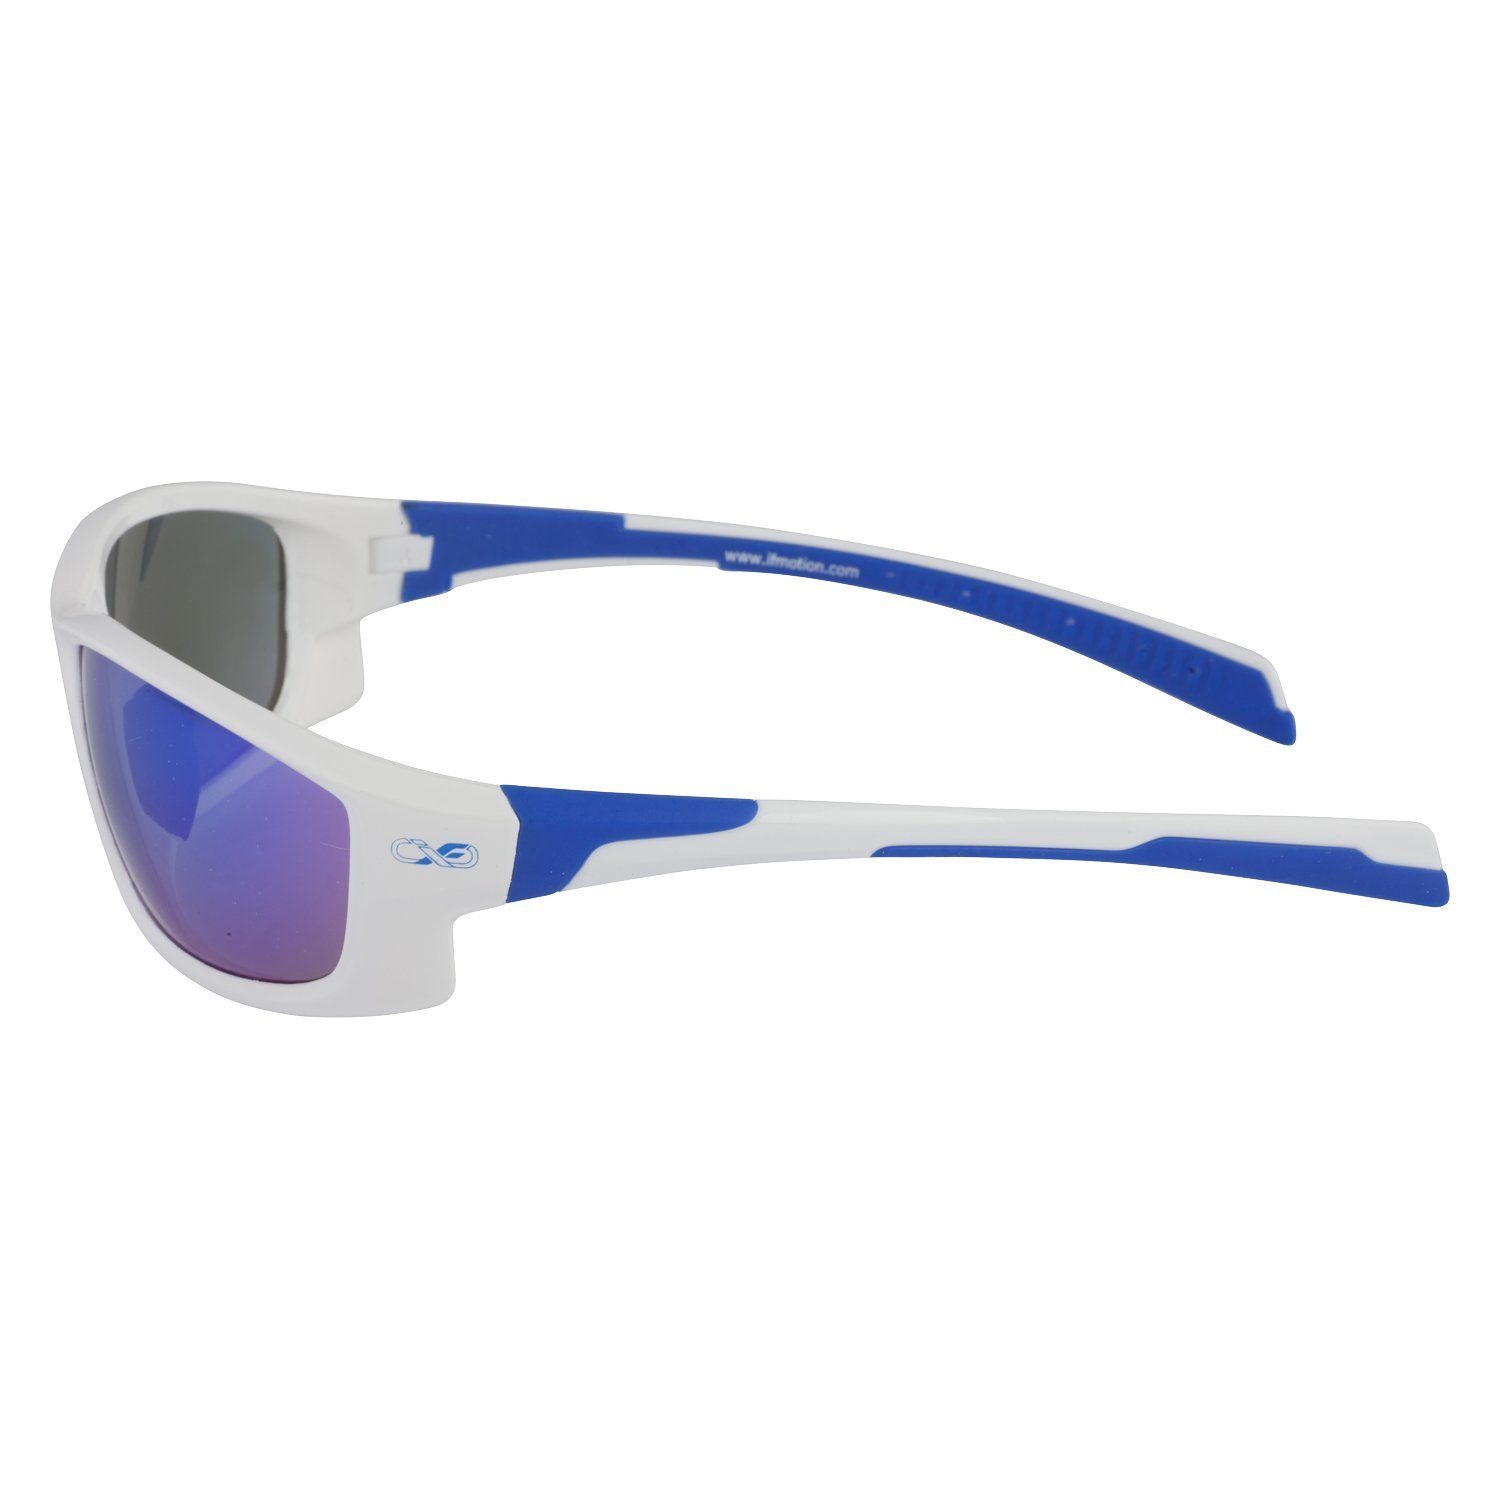 Viwanda Farben Reinigungstuch) Sportbrille (Mit 3 Infinite Sonnenbrille Aufbewahrungsbeutel / Eins in